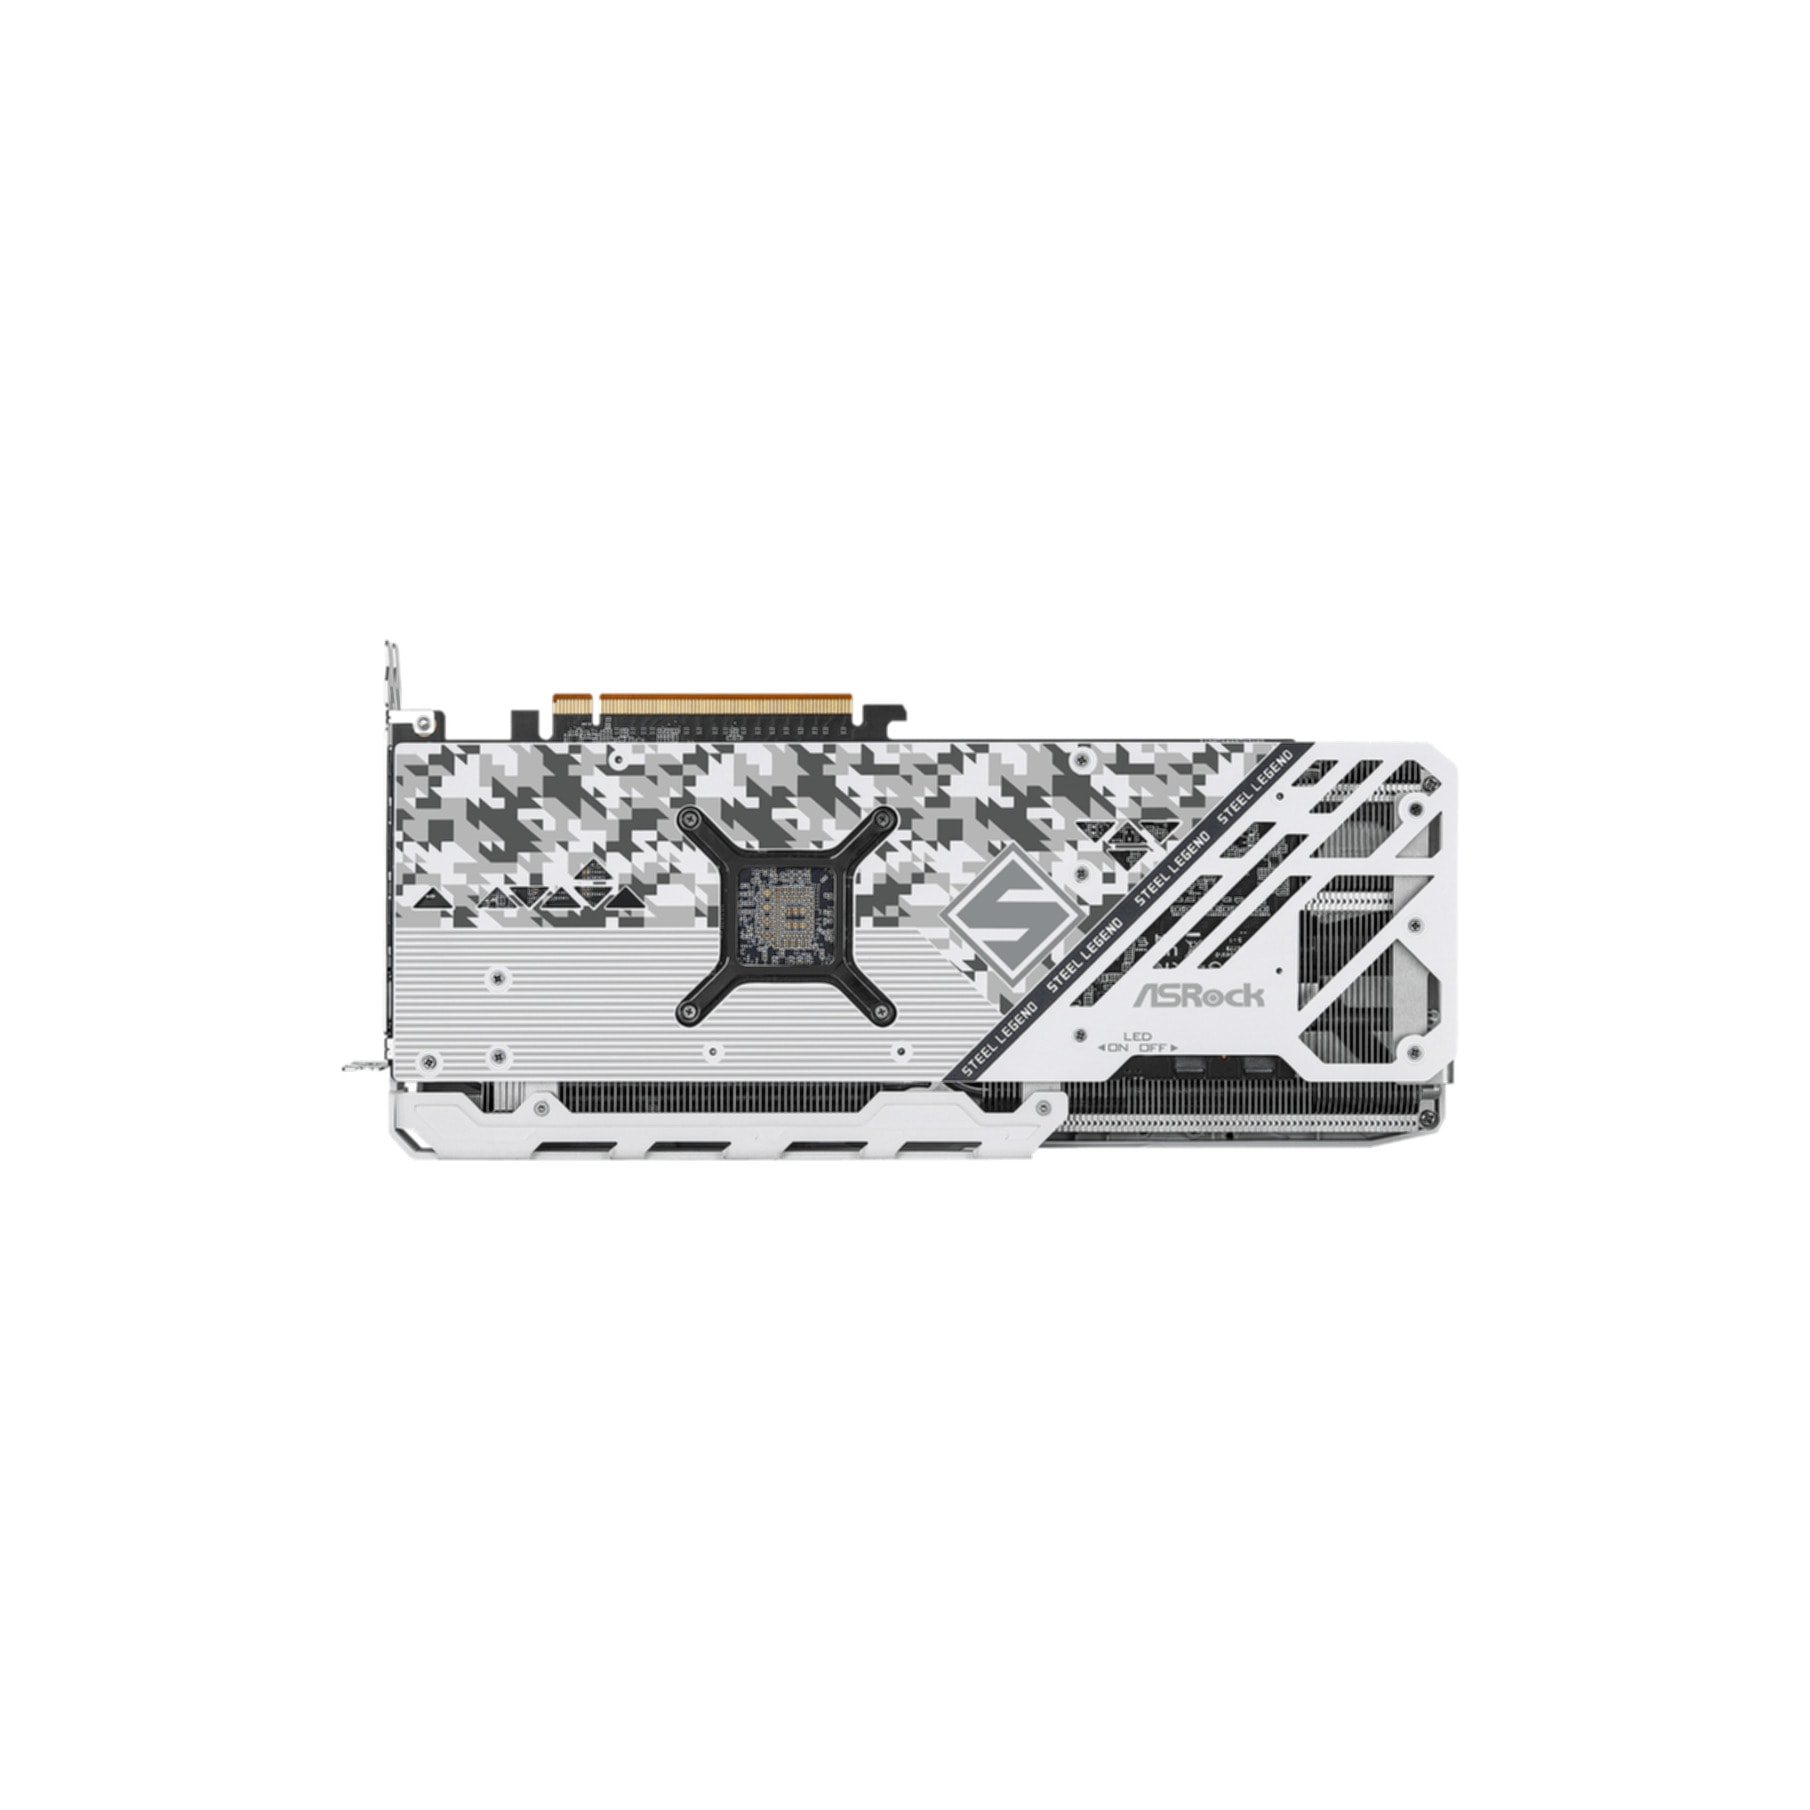 Asrock Grafikkarte »Radeon™ RX 7900 GRE Steel Legend 16 GB OC«, 16 GB, GDDR6